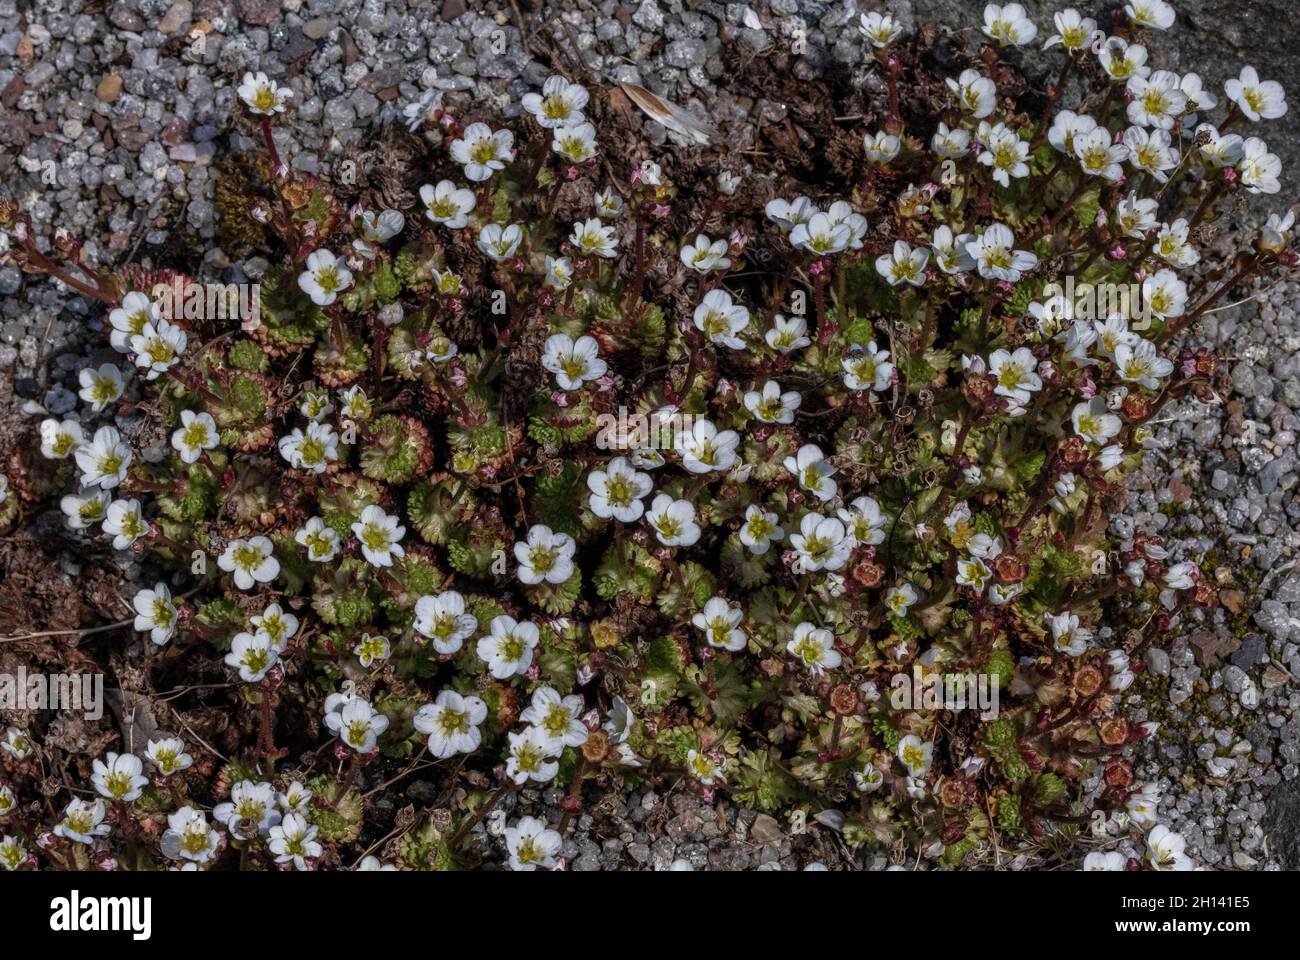 Irish Saxifrage, Saxifraga rosacea, in flower on limestone outcrop. Stock Photo